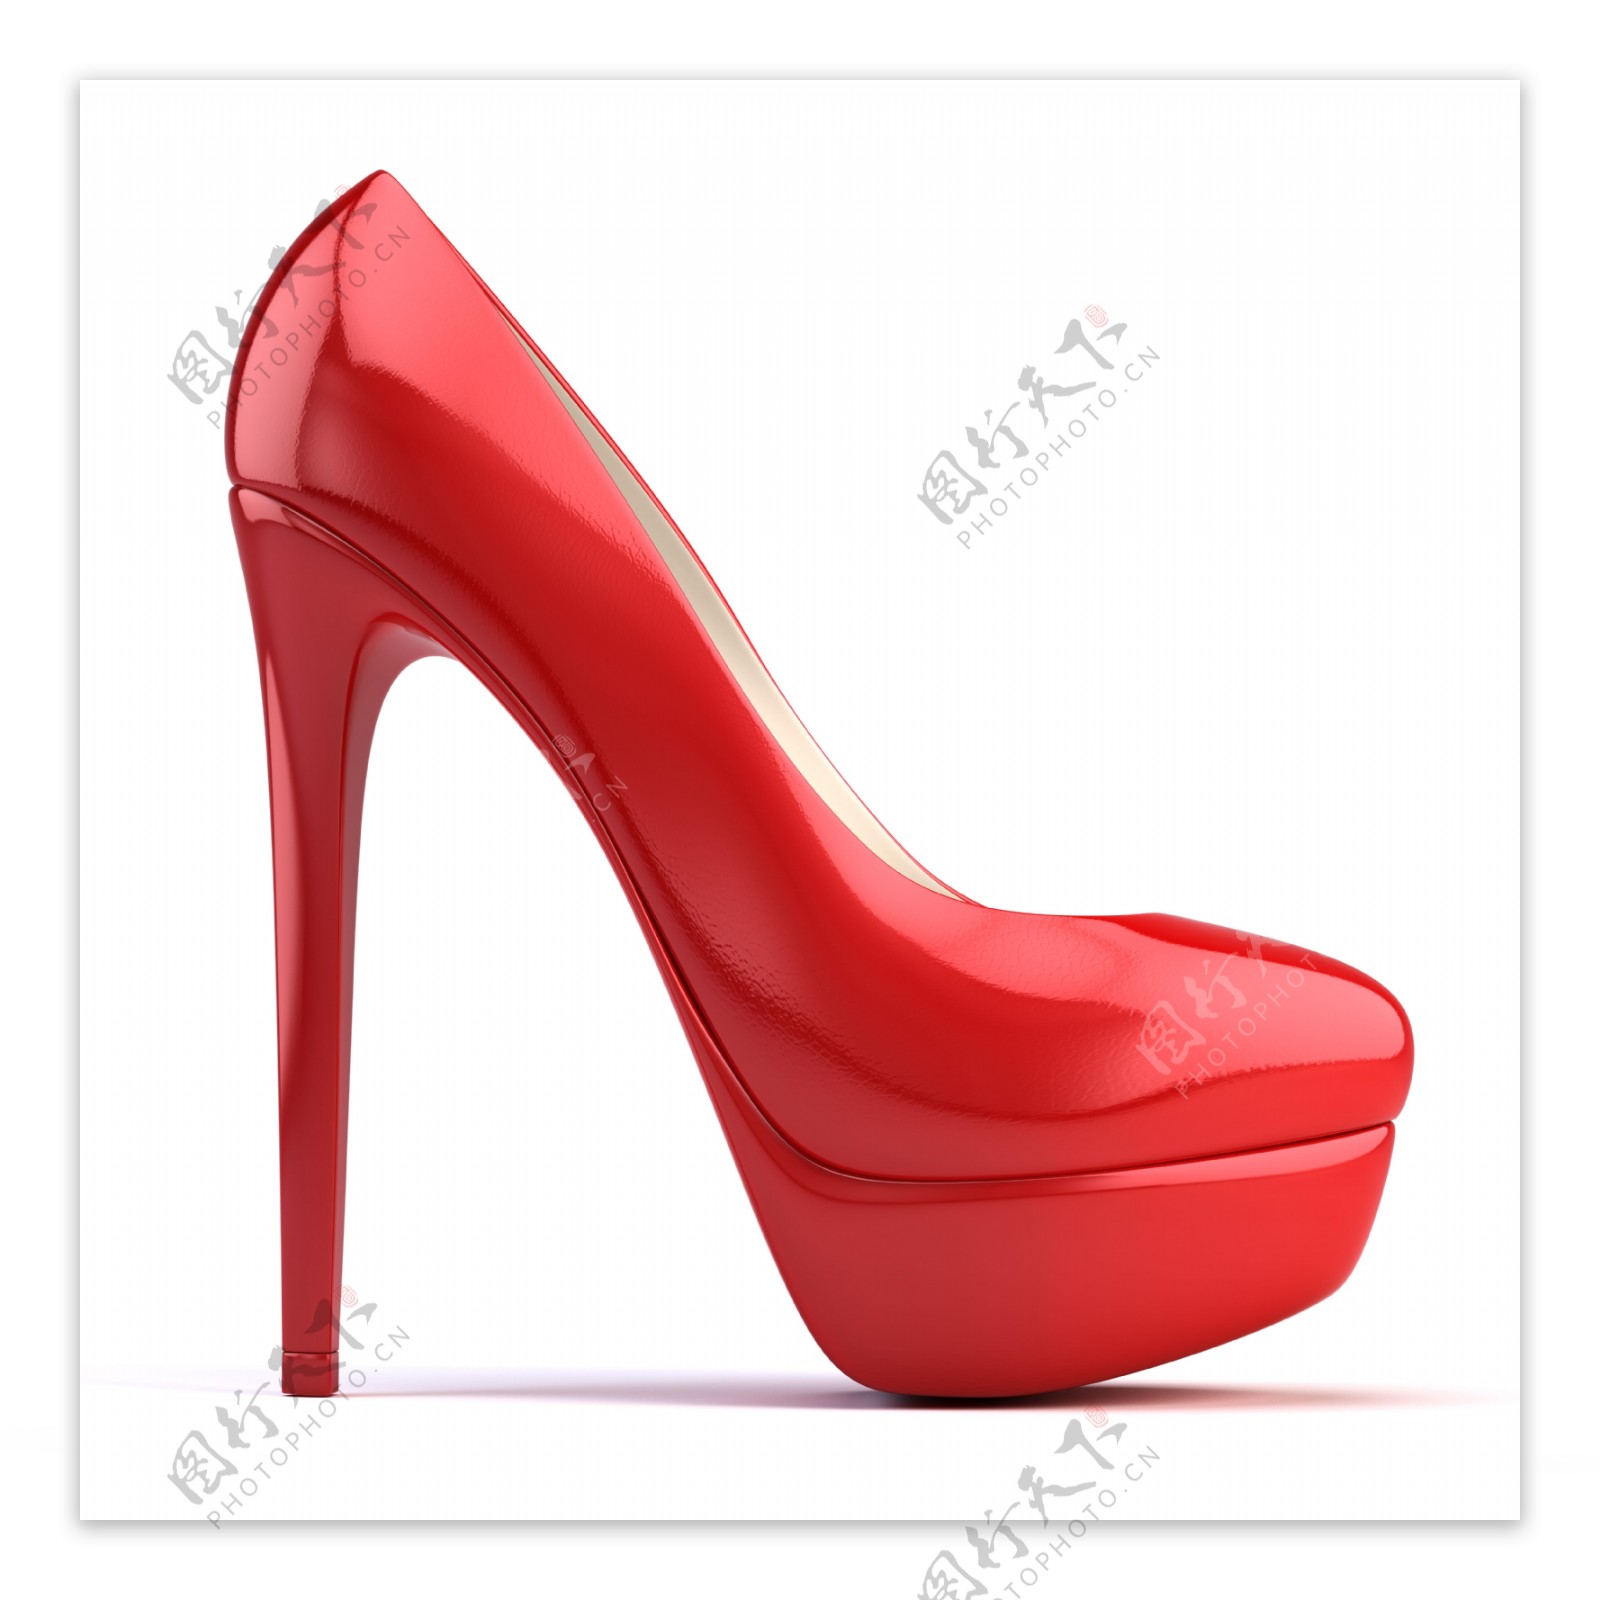 一只红色时尚高跟鞋图片